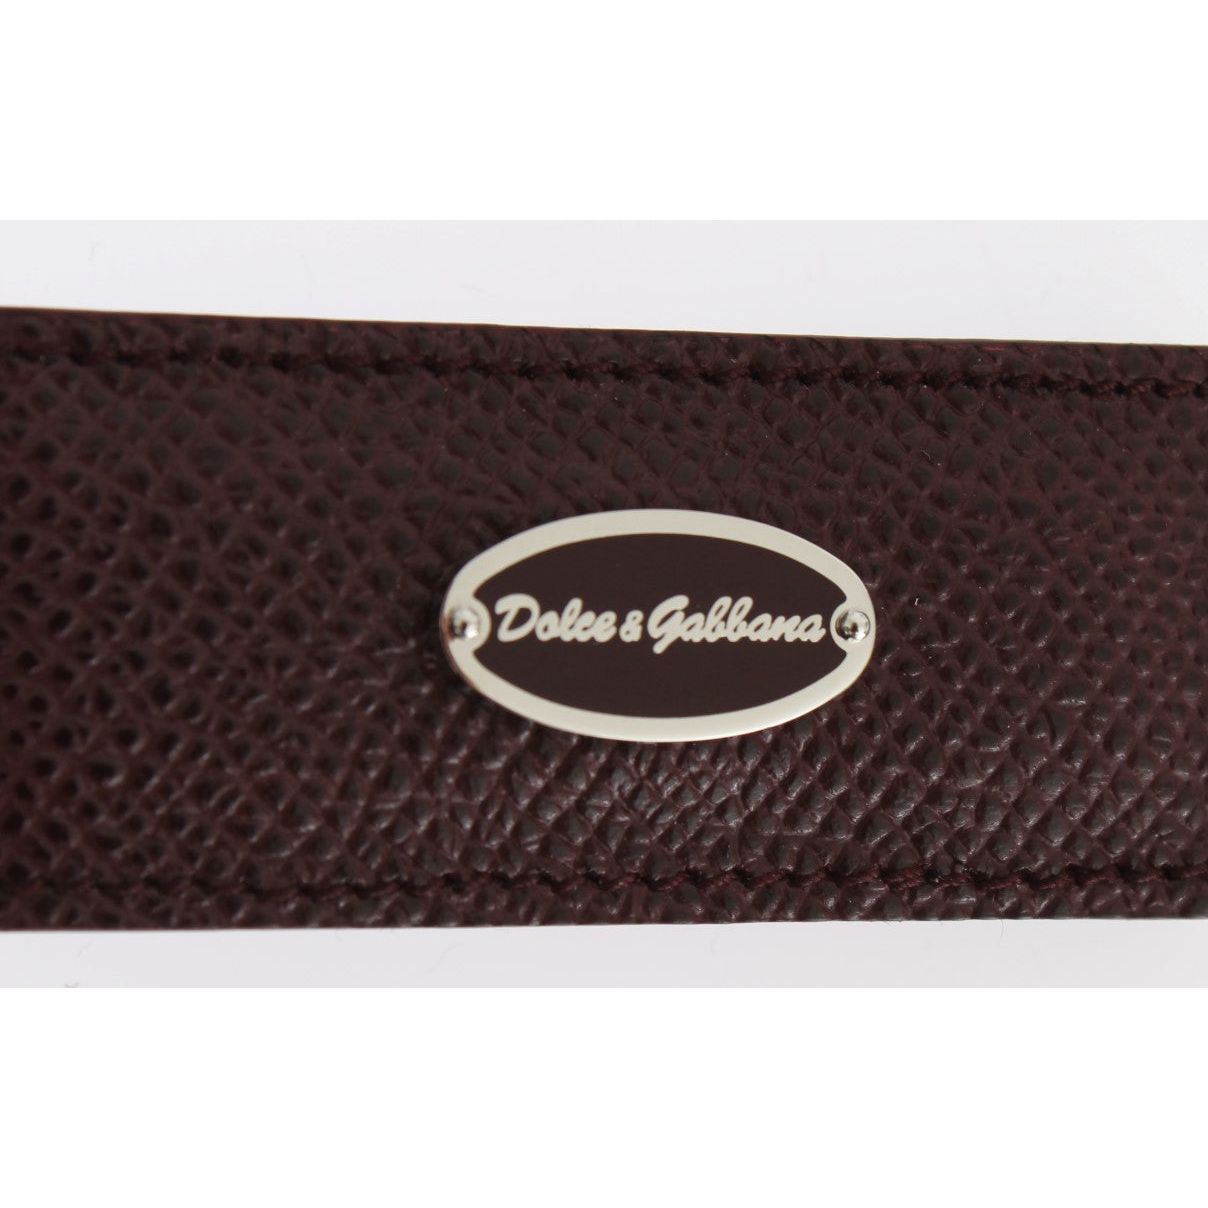 Dolce & Gabbana | Exquisite Bordeaux Leather Money Clip| McRichard Designer Brands   